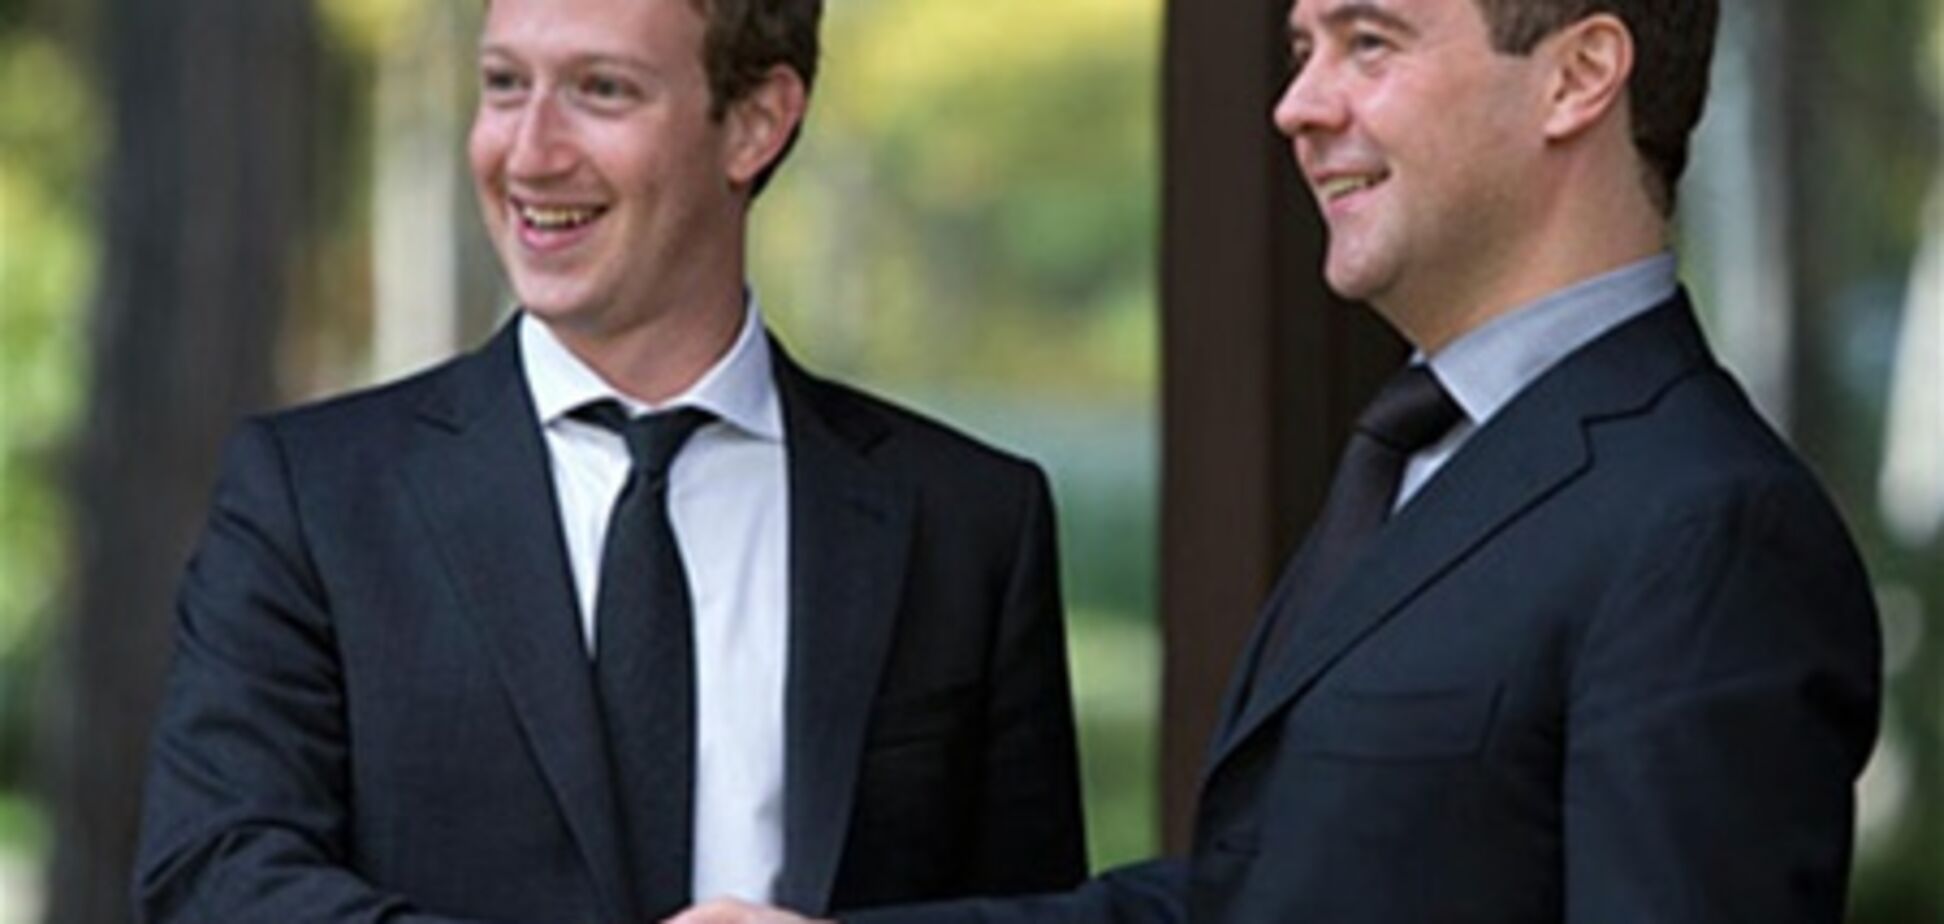 Цукерберг приехал к Медведеву в свадебном костюме?